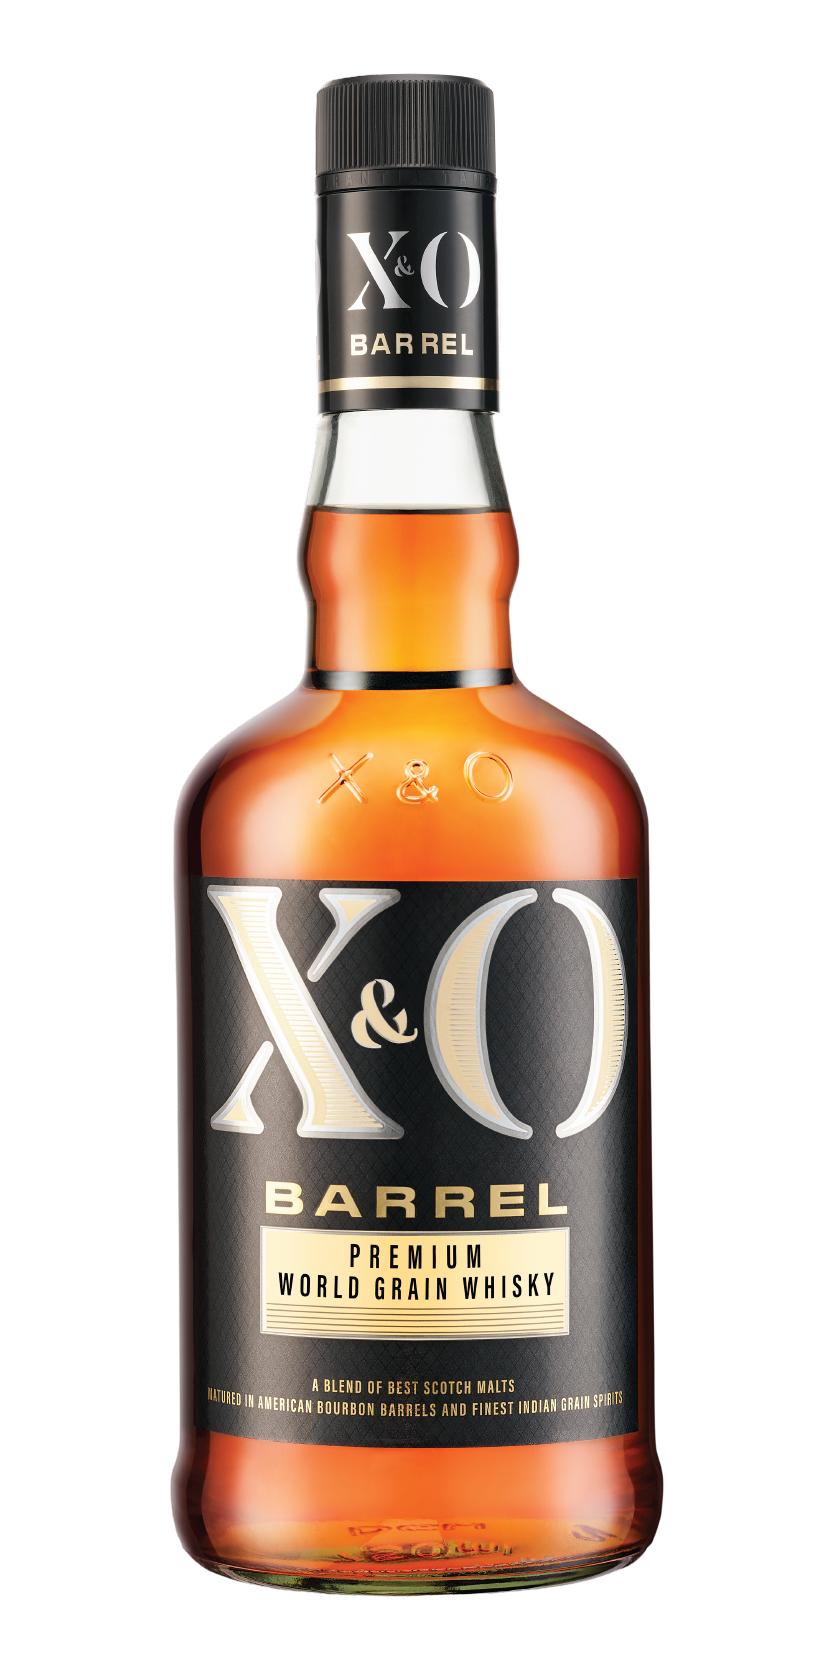 X&O Barrel